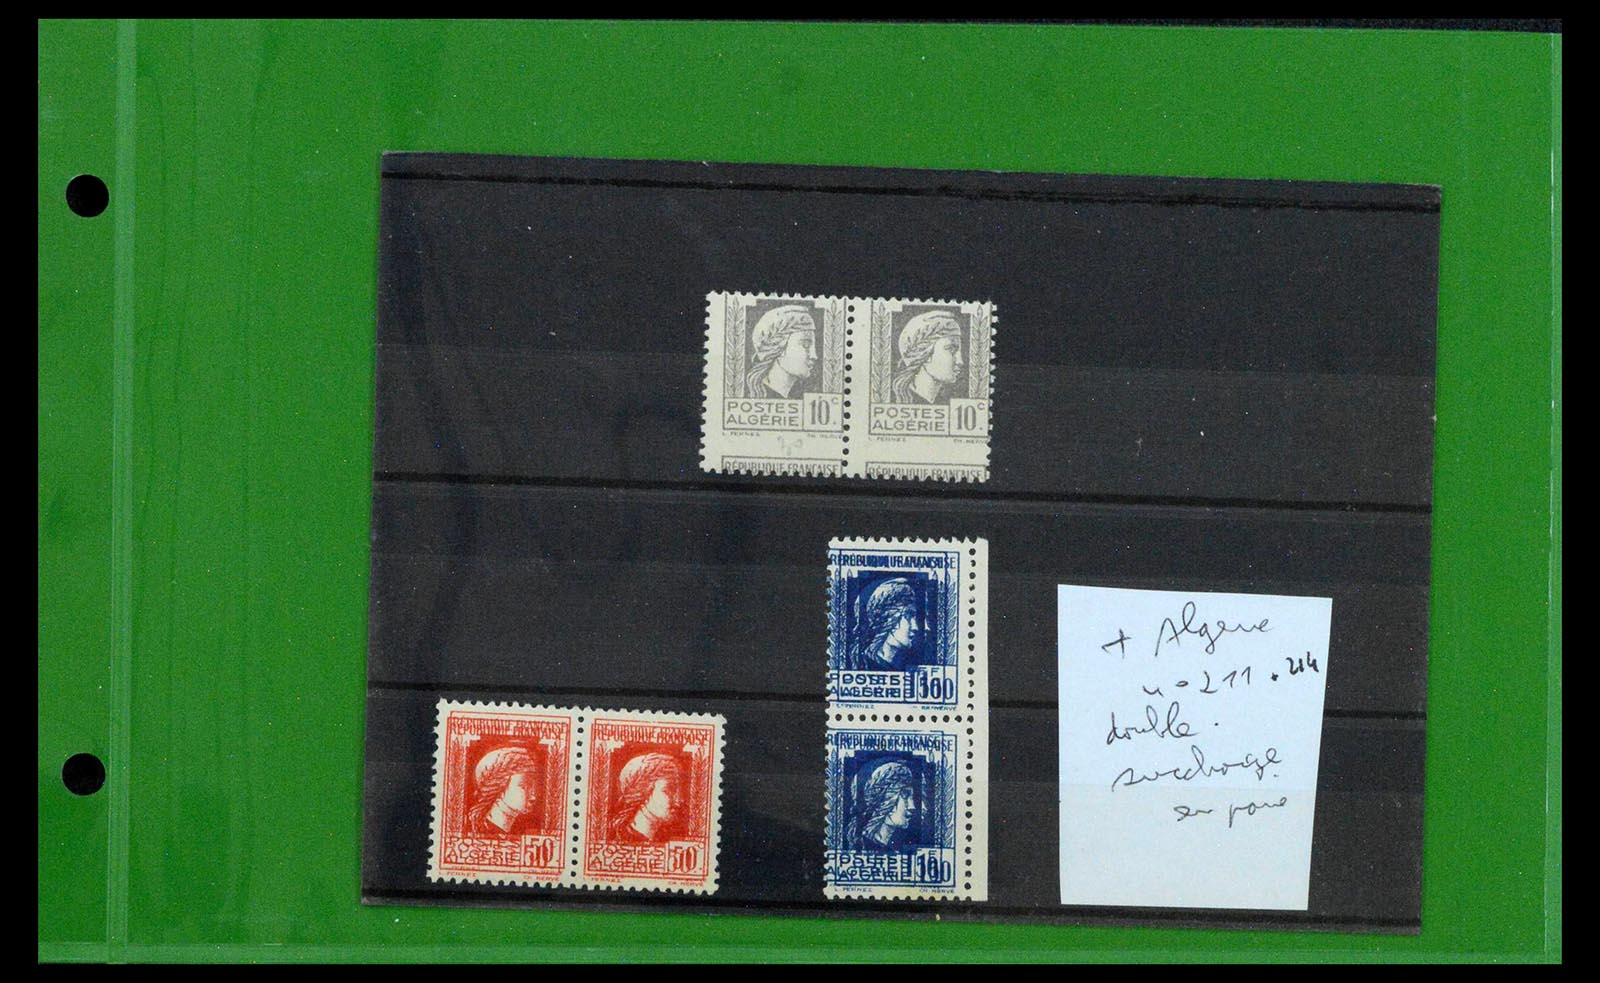 39114 0006 - Stamp collection 39114 Algeria varieties 1926-1950.